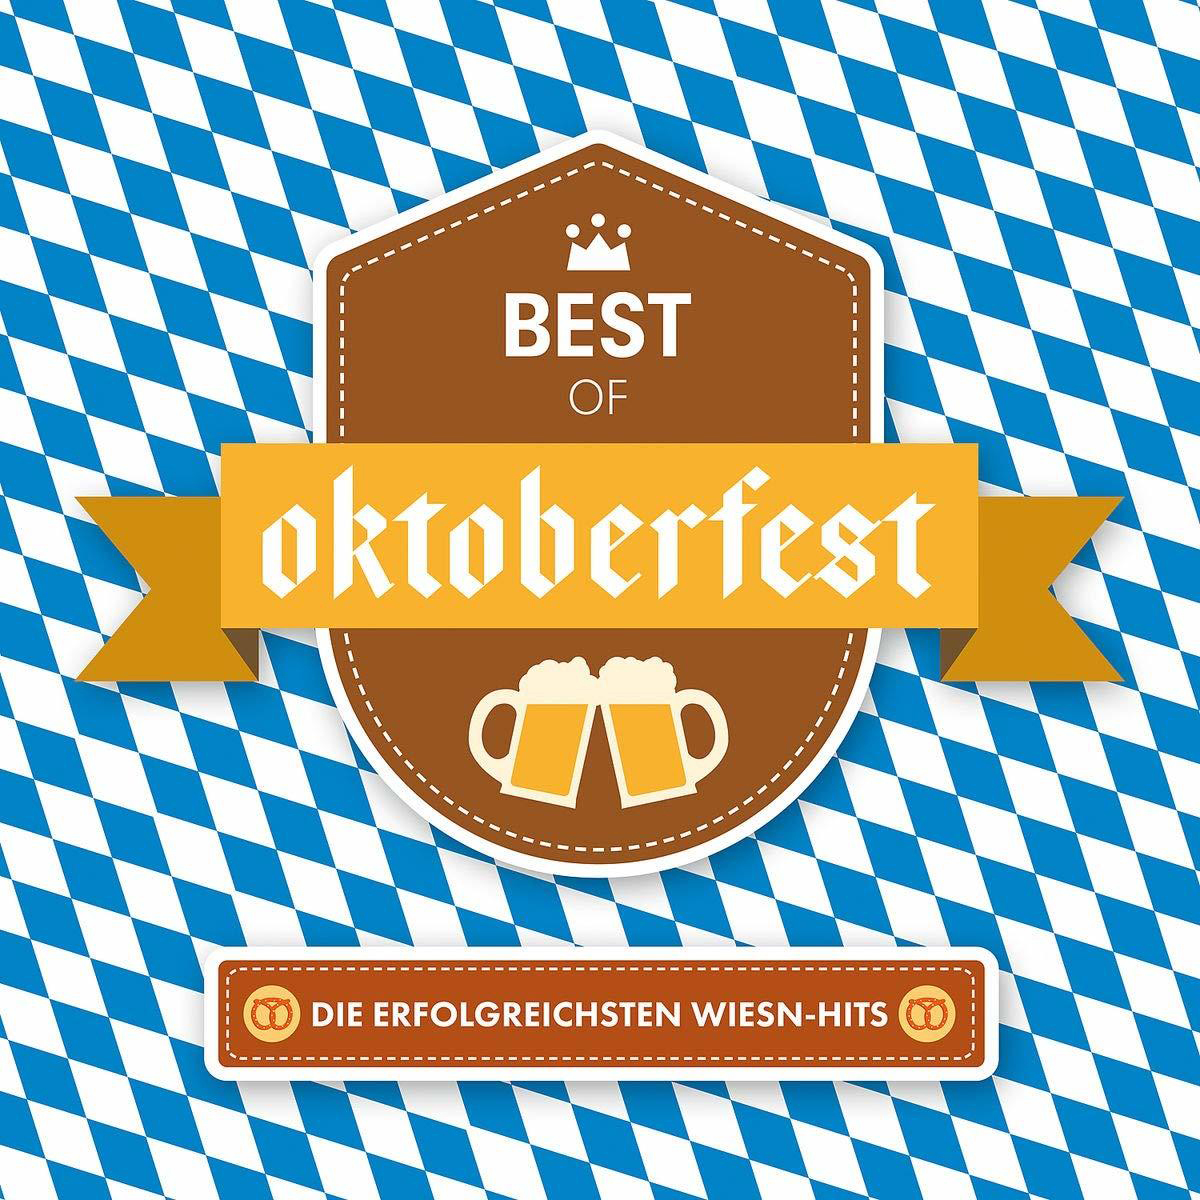 VARIOUS - Best Of Wiesn-Hits (CD) Oktoberfest-Erfolgreichsten 